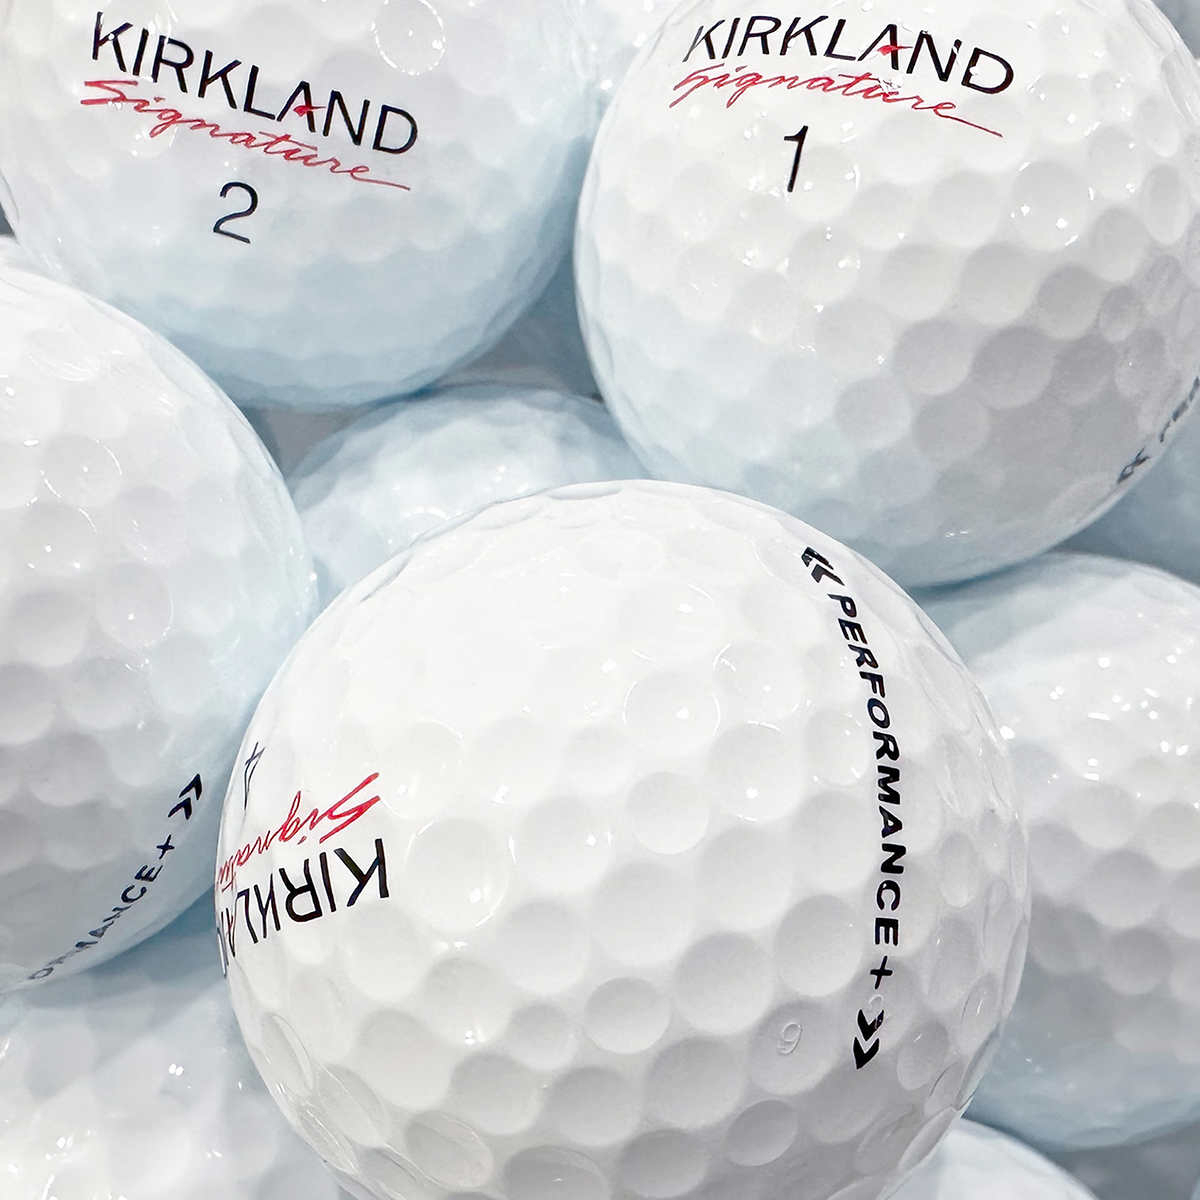 Kirkland Signature Golf Balls, 24 Count